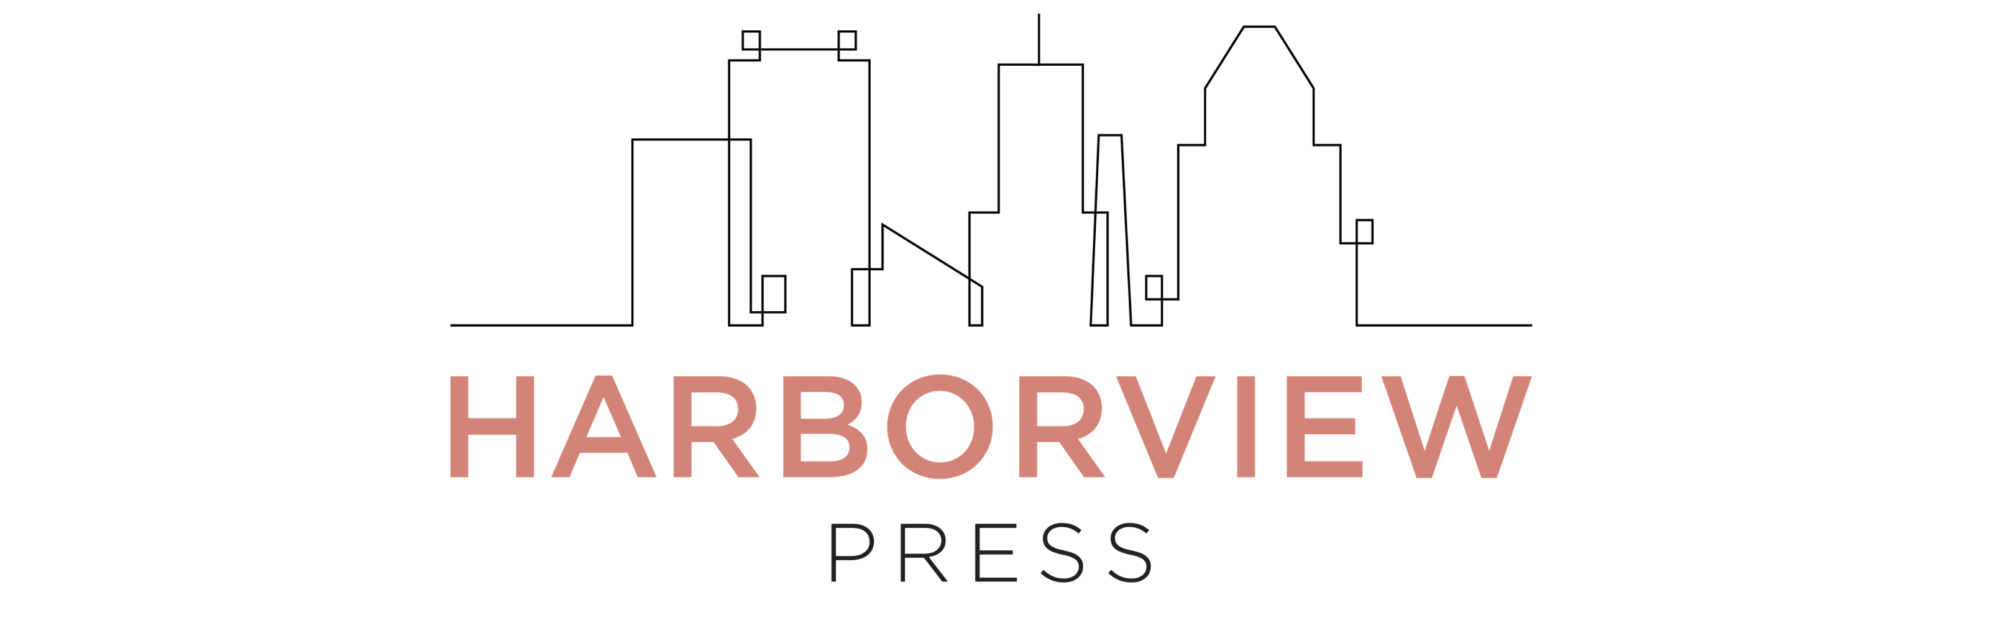 Harborview Press